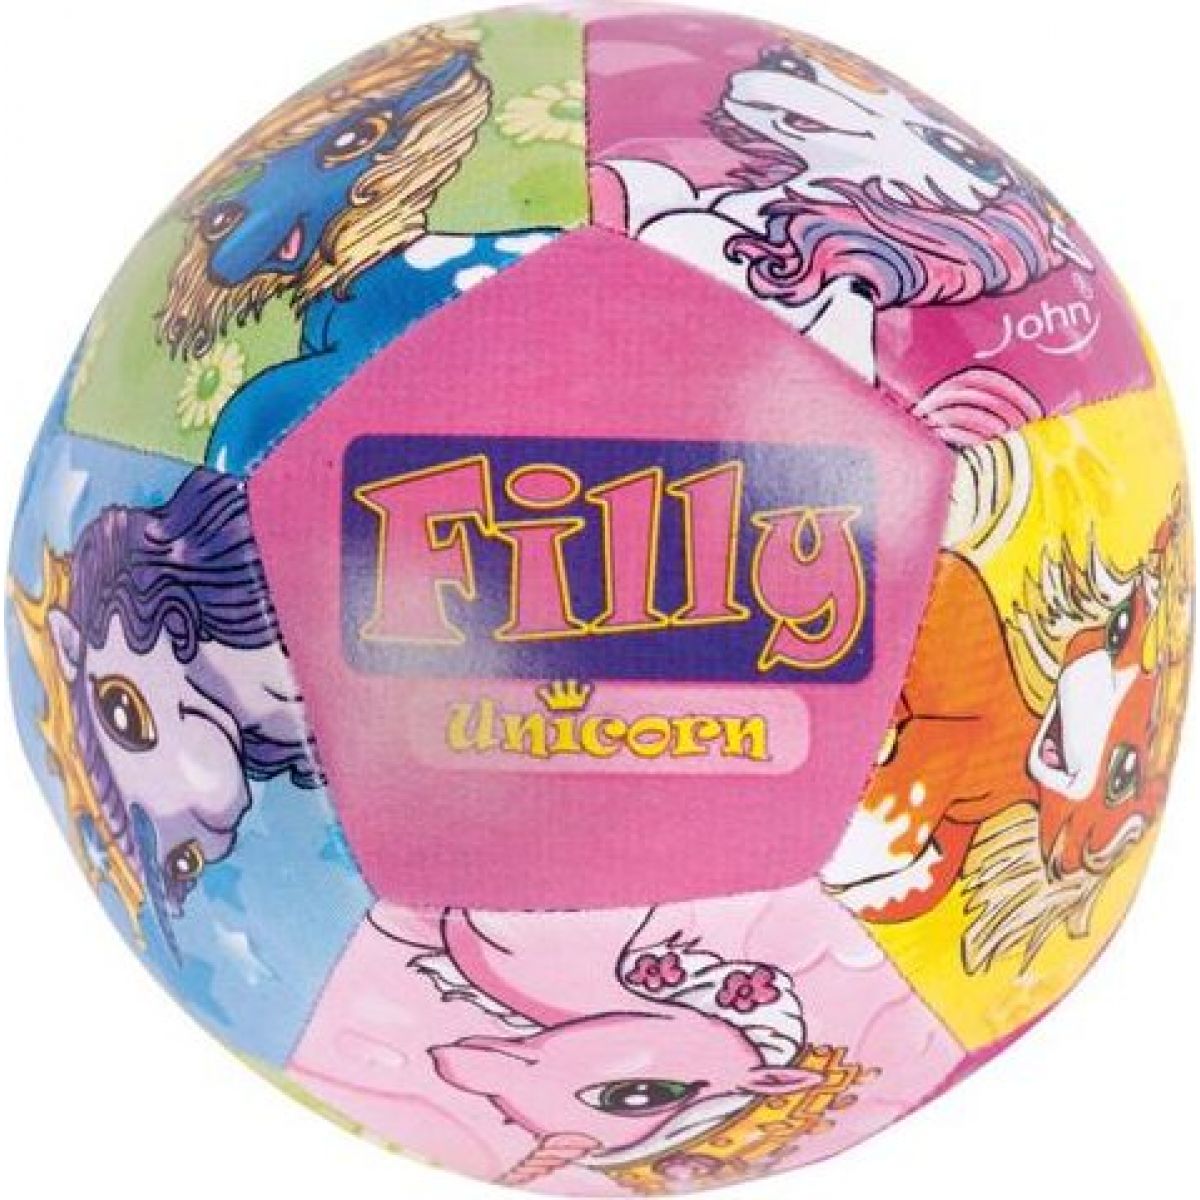 John Filly Měkký míč 10cm